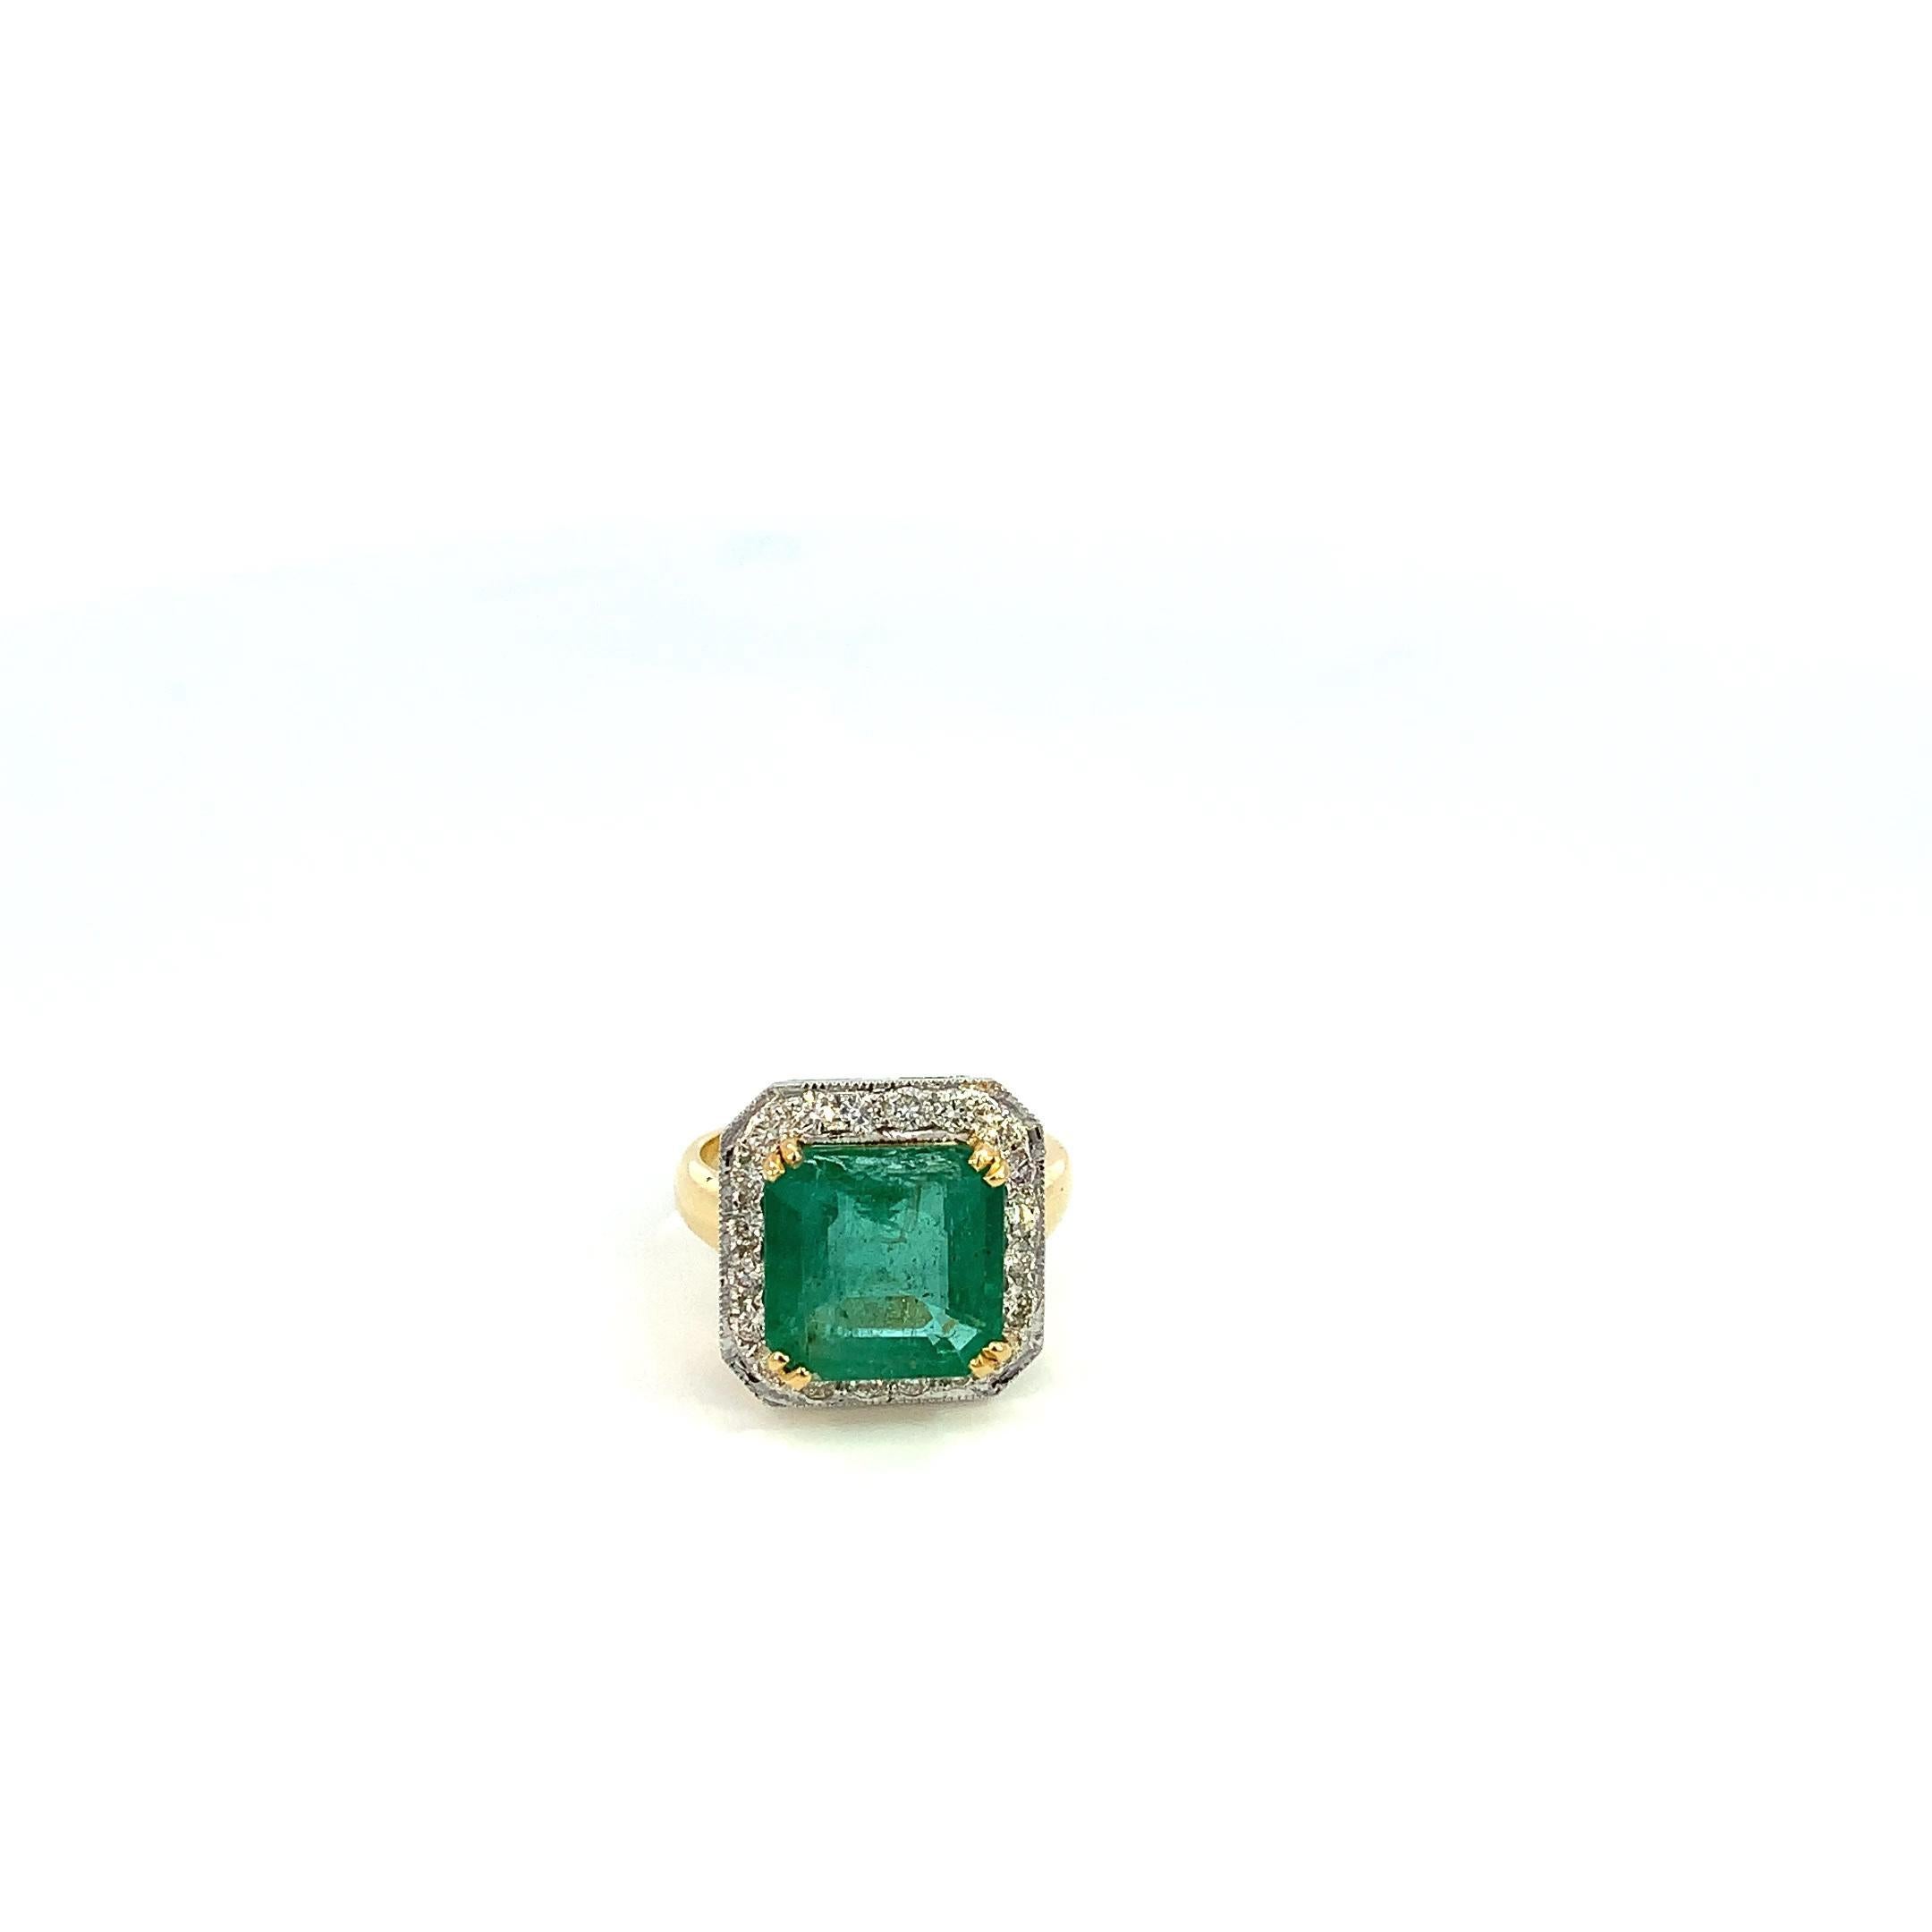 Unser atemberaubender Smaragd-Cocktailring ist eine bezaubernde Kombination aus dem faszinierenden Charme von Smaragden und dem funkelnden Glanz von Diamanten. Dieser sorgfältig gefertigte Ring aus 18-karätigem Gold ist eine wahre Verkörperung von